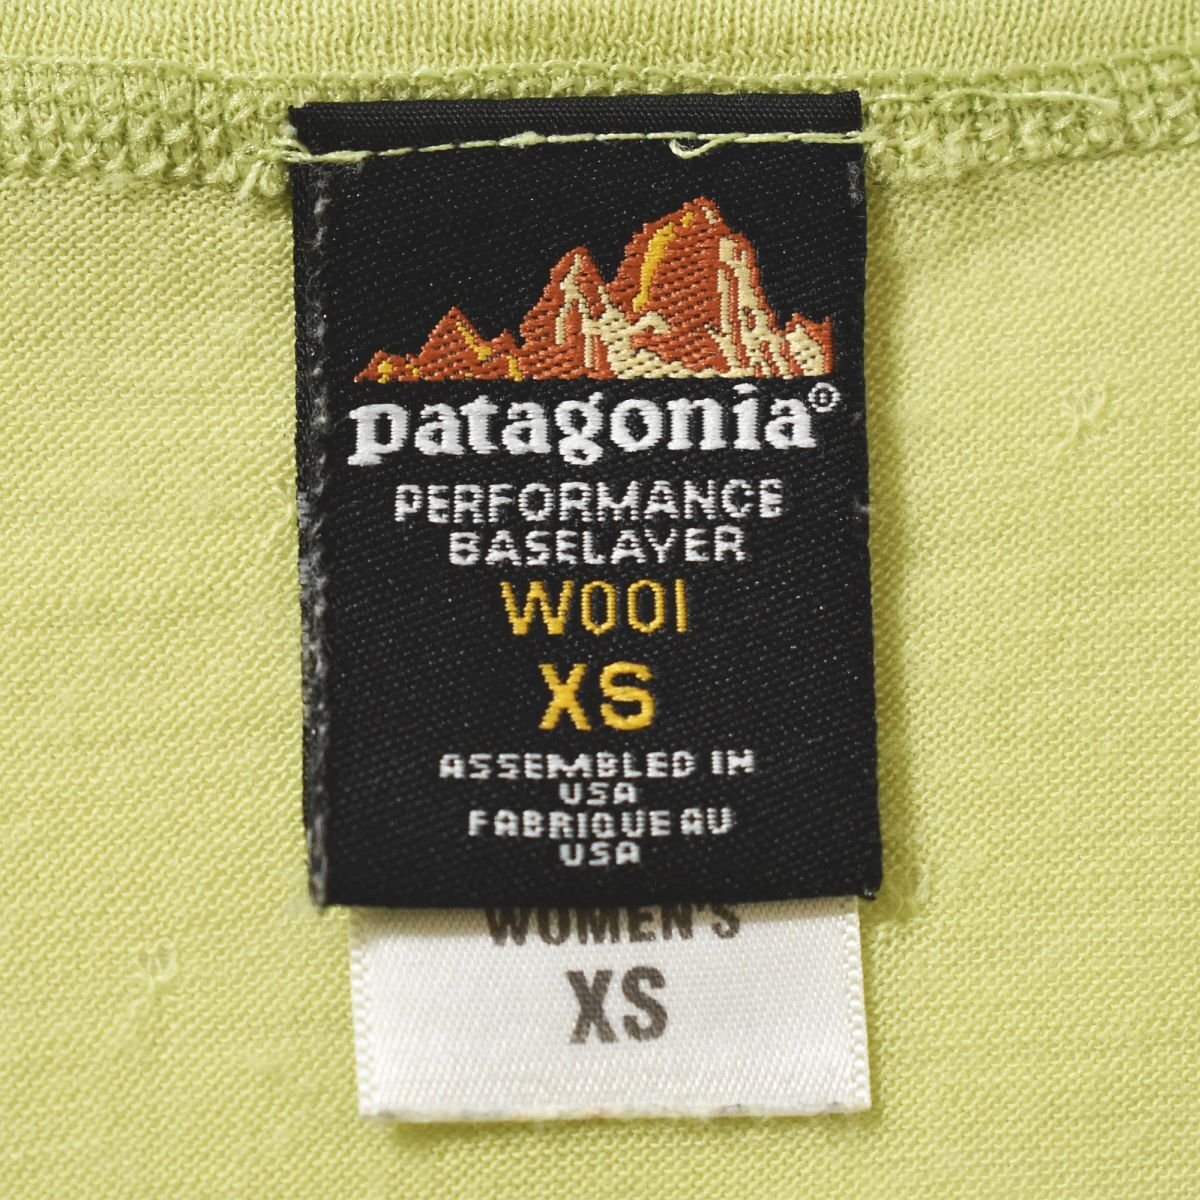 ♪美品 冬場のアウトドアを快適に! Patagonia パタゴニア ウール ハーフジップ インナー パフォーマンスベースレイヤー XS レディース♪_画像4